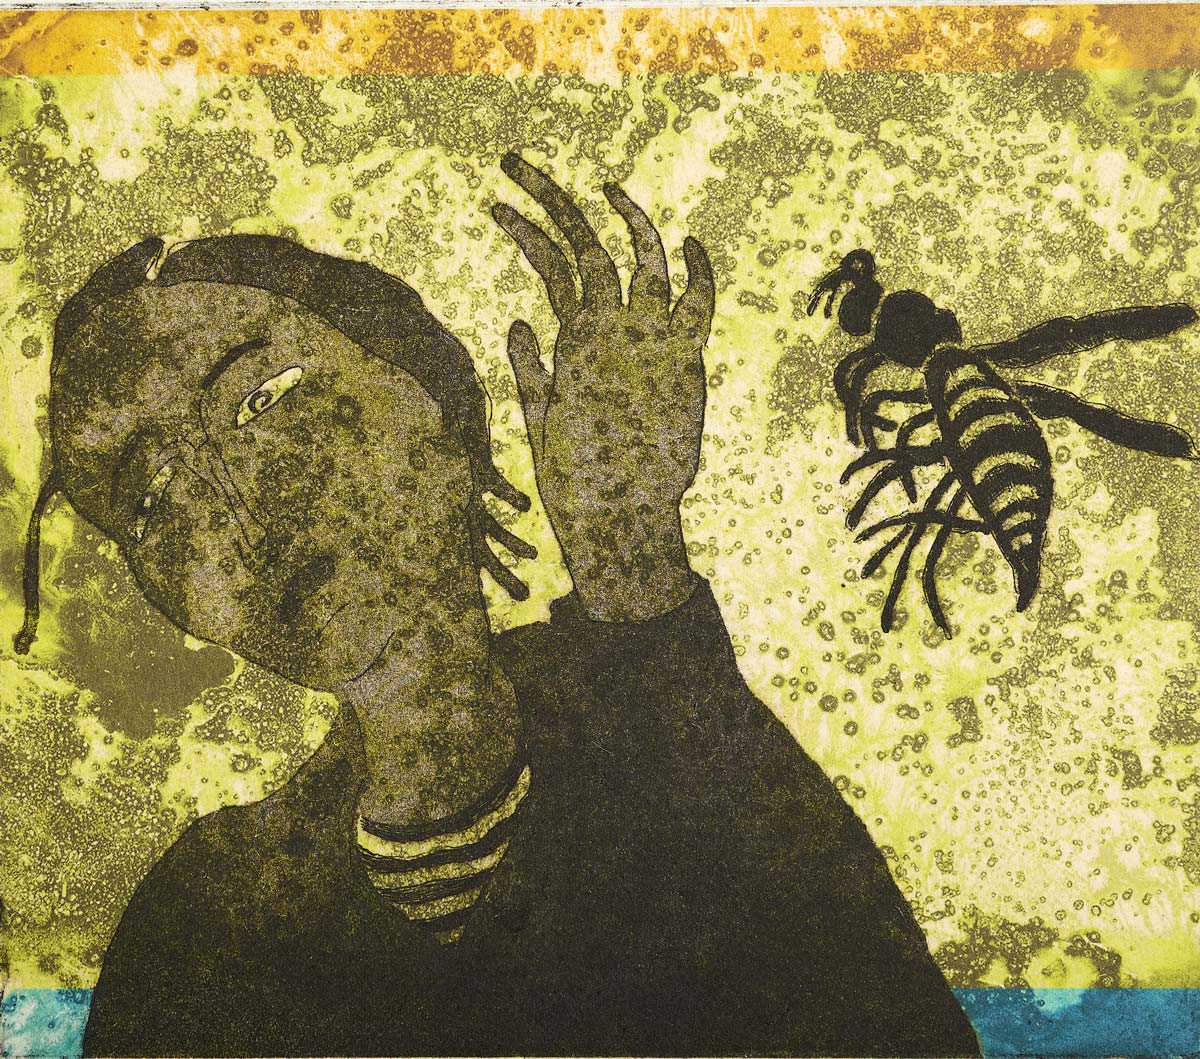 I Bite & Sting (Hornet), 26 x 27 cm, Colour Etching, 2020